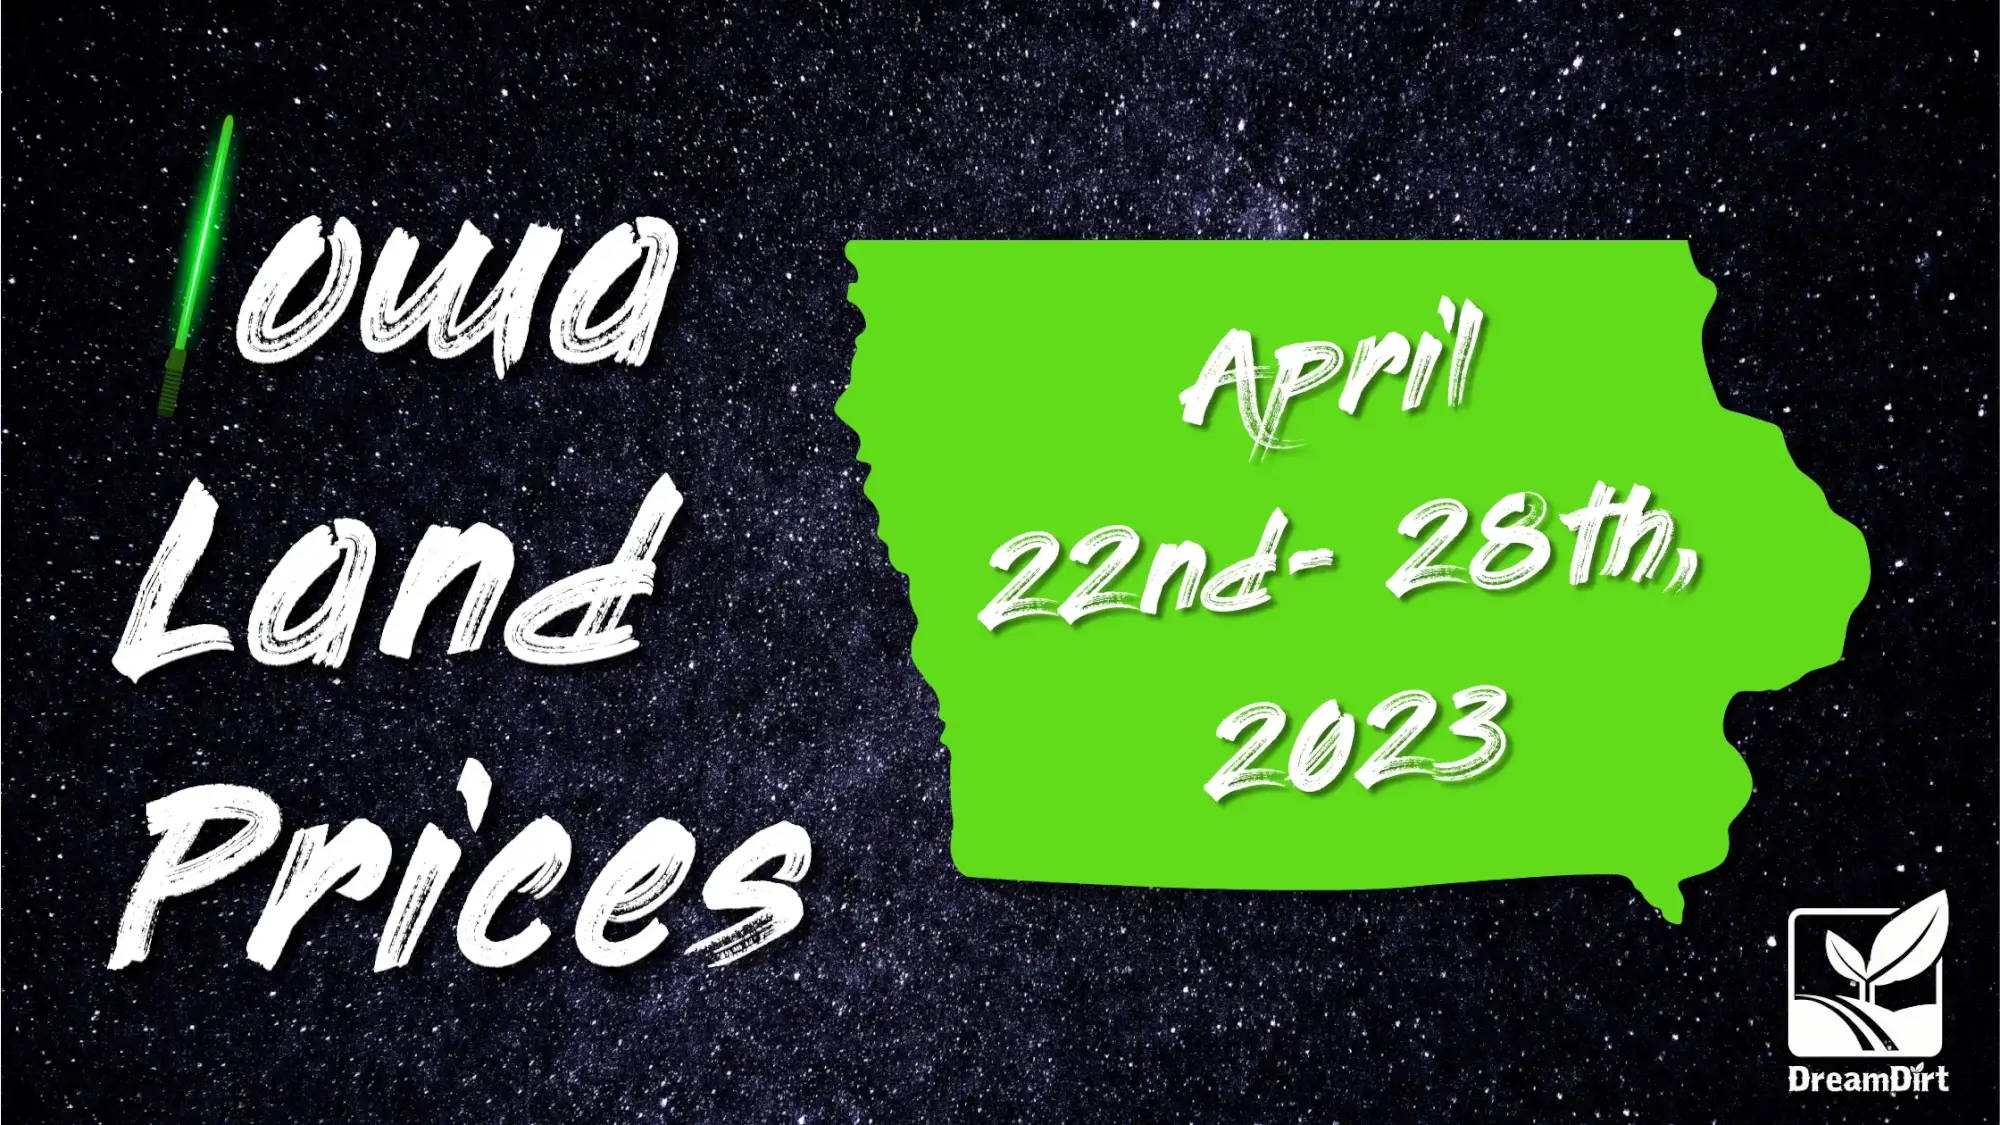 April 22-28th Iowa farmland sales